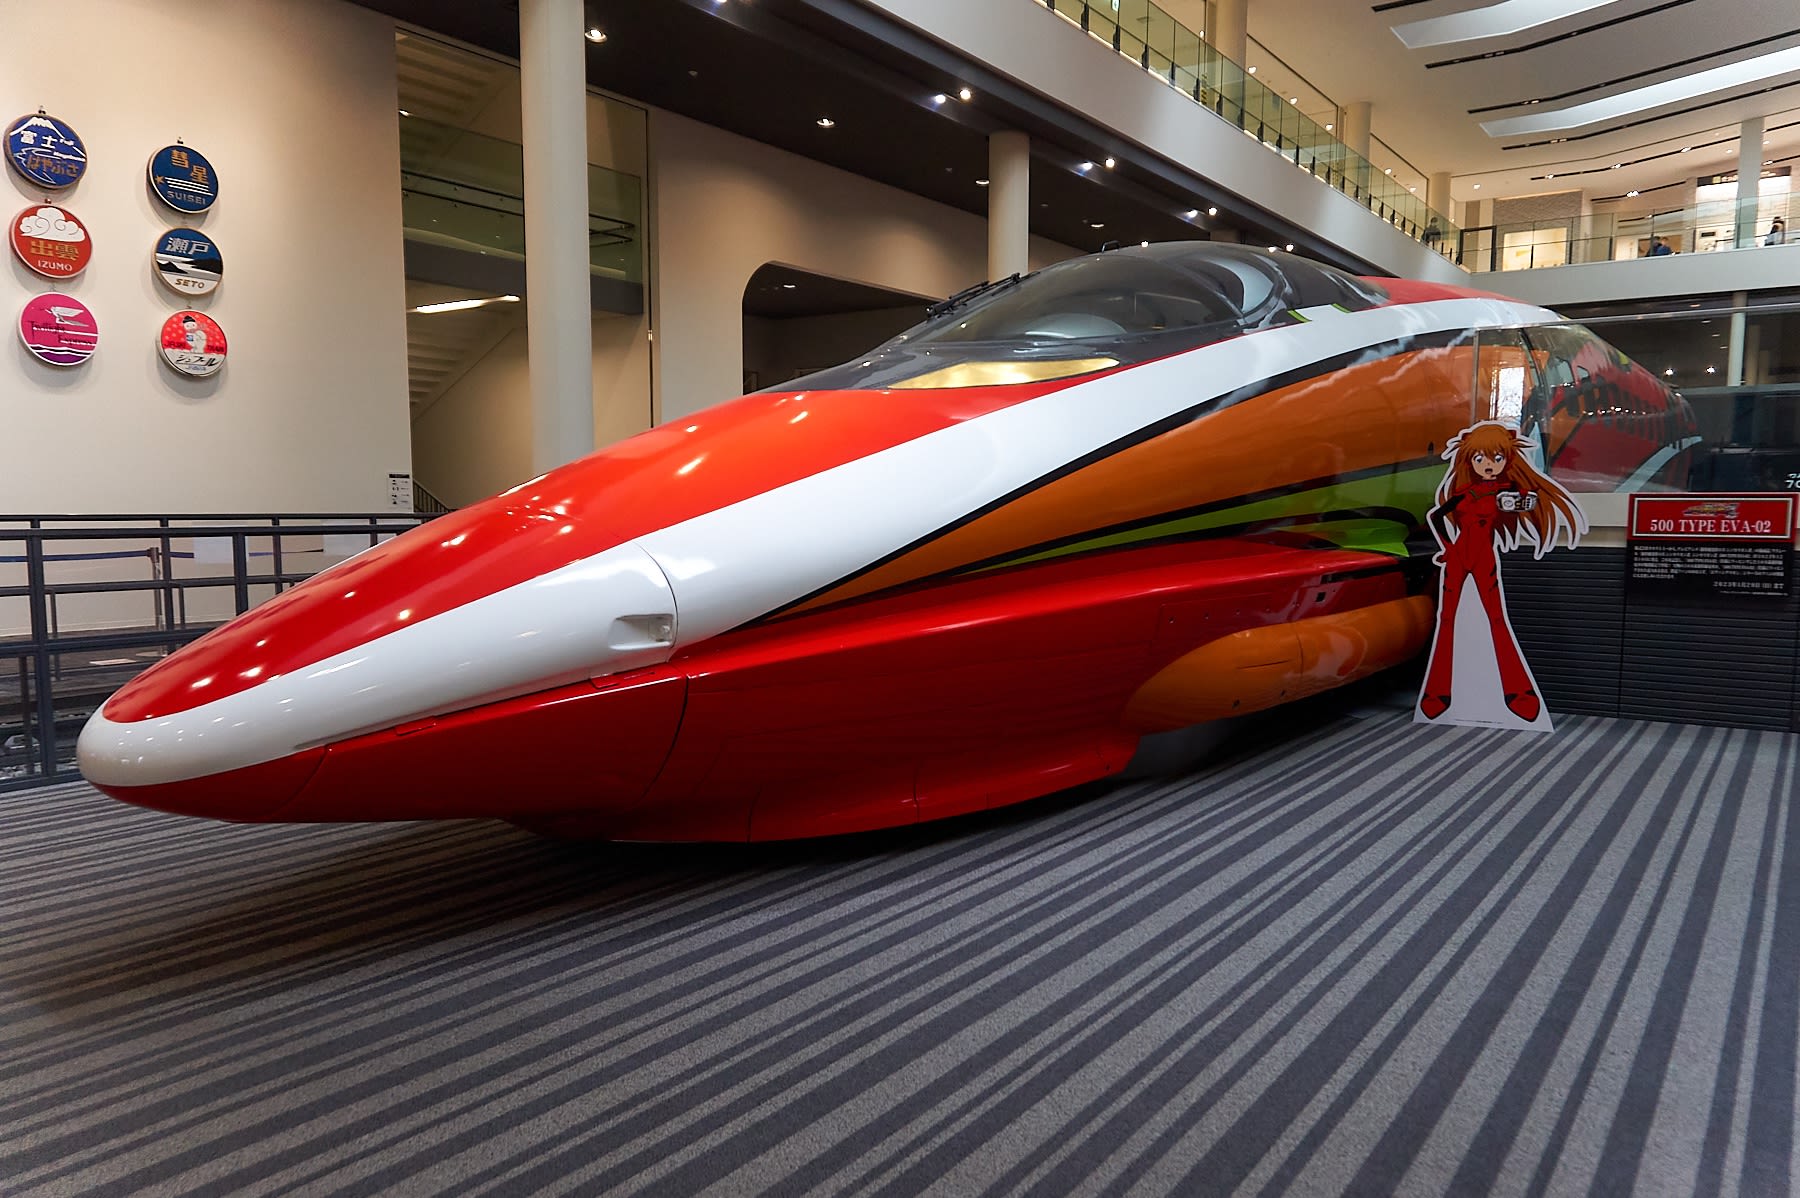 京都鉄道博物館 「500 TYPE EVA-02」仕様500系新幹線電車特別展示